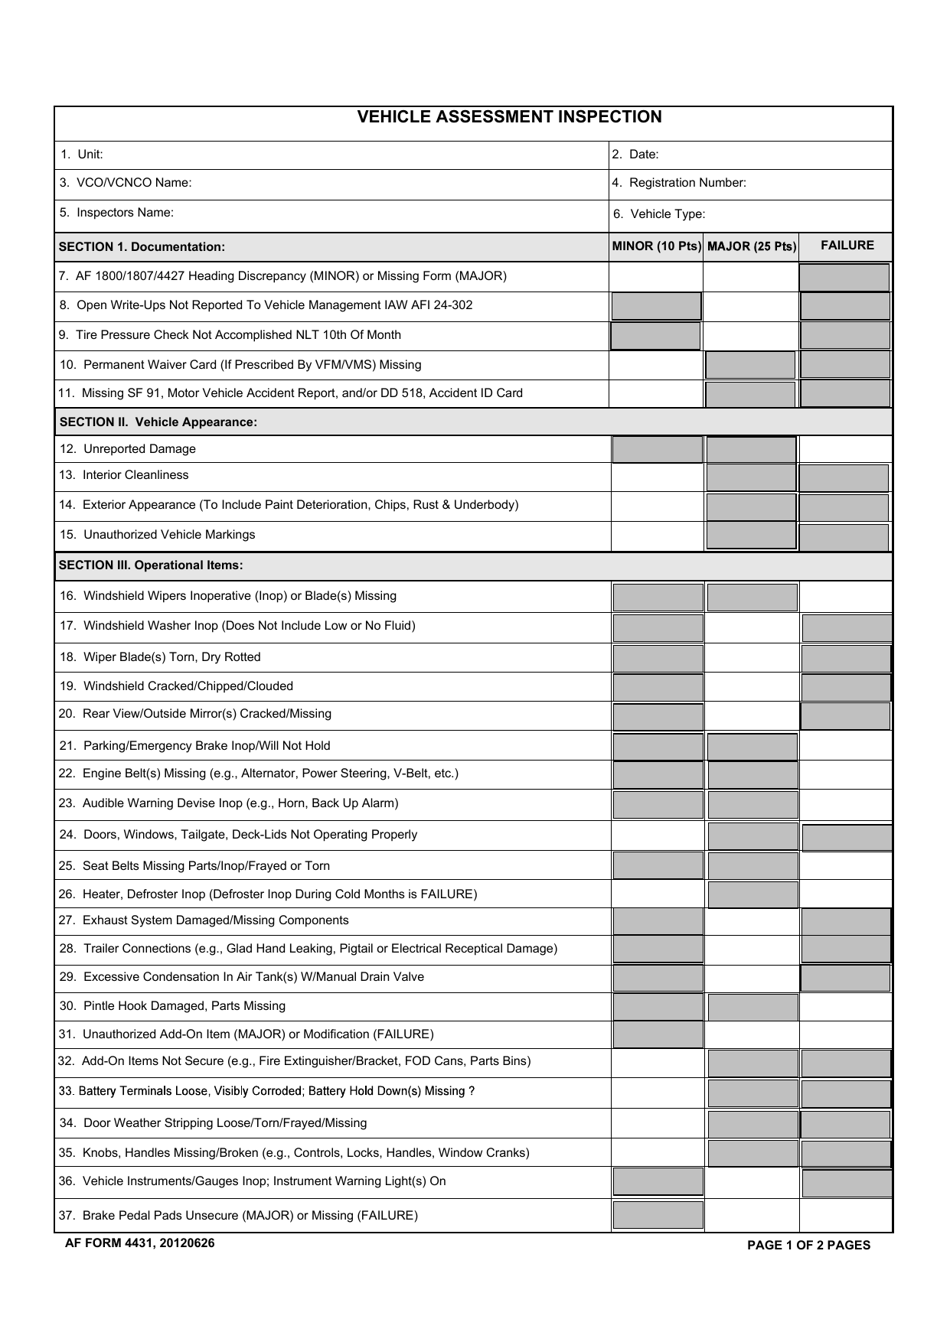 AF Form 4431 Vehicle Assessment Inspection, Page 1